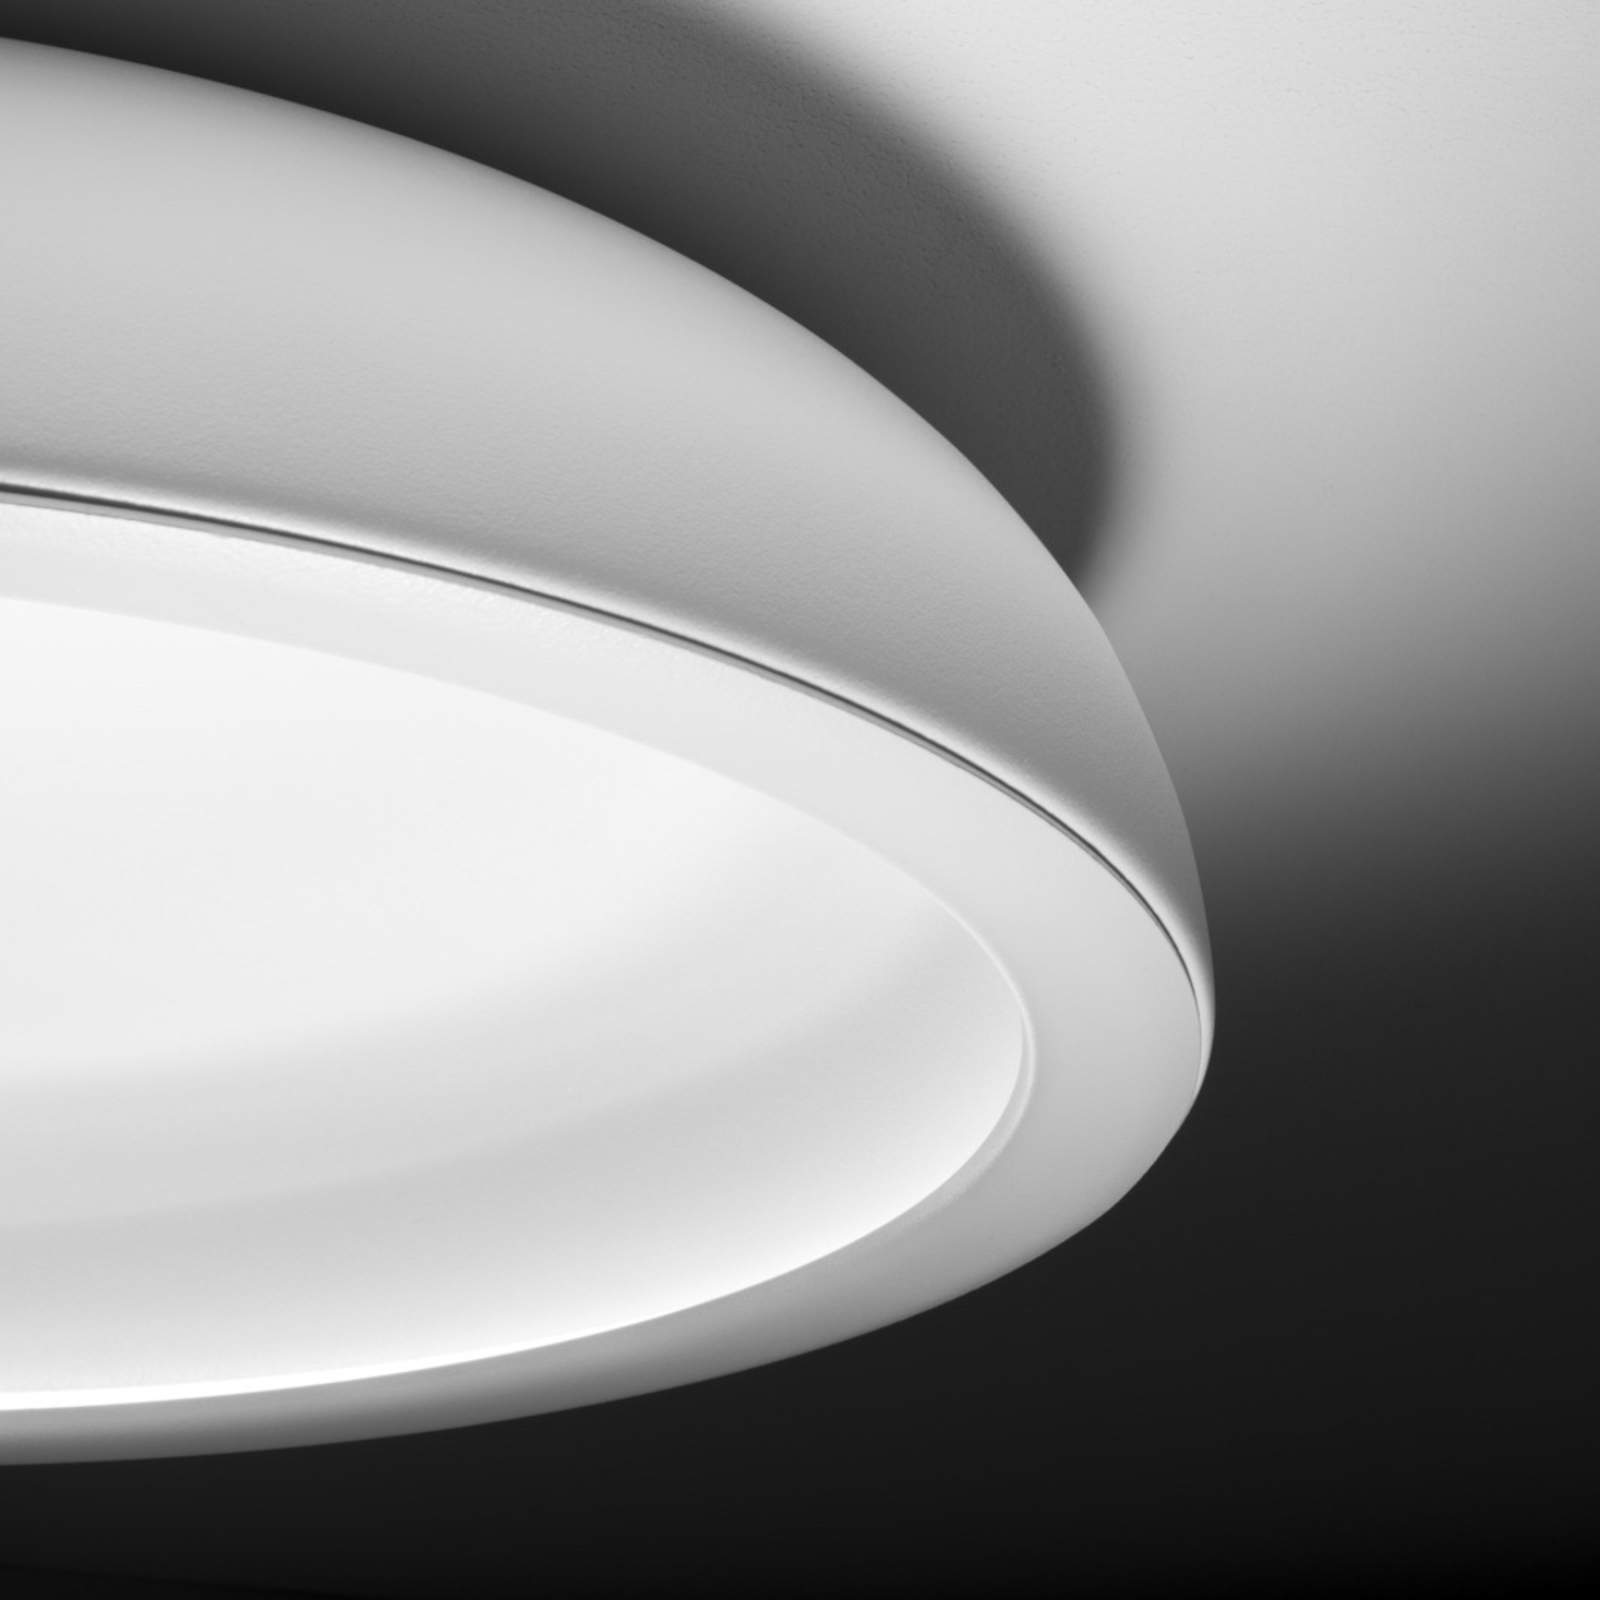 Stilnovo Reflexio LED stropní světlo, Ø65cm bílá